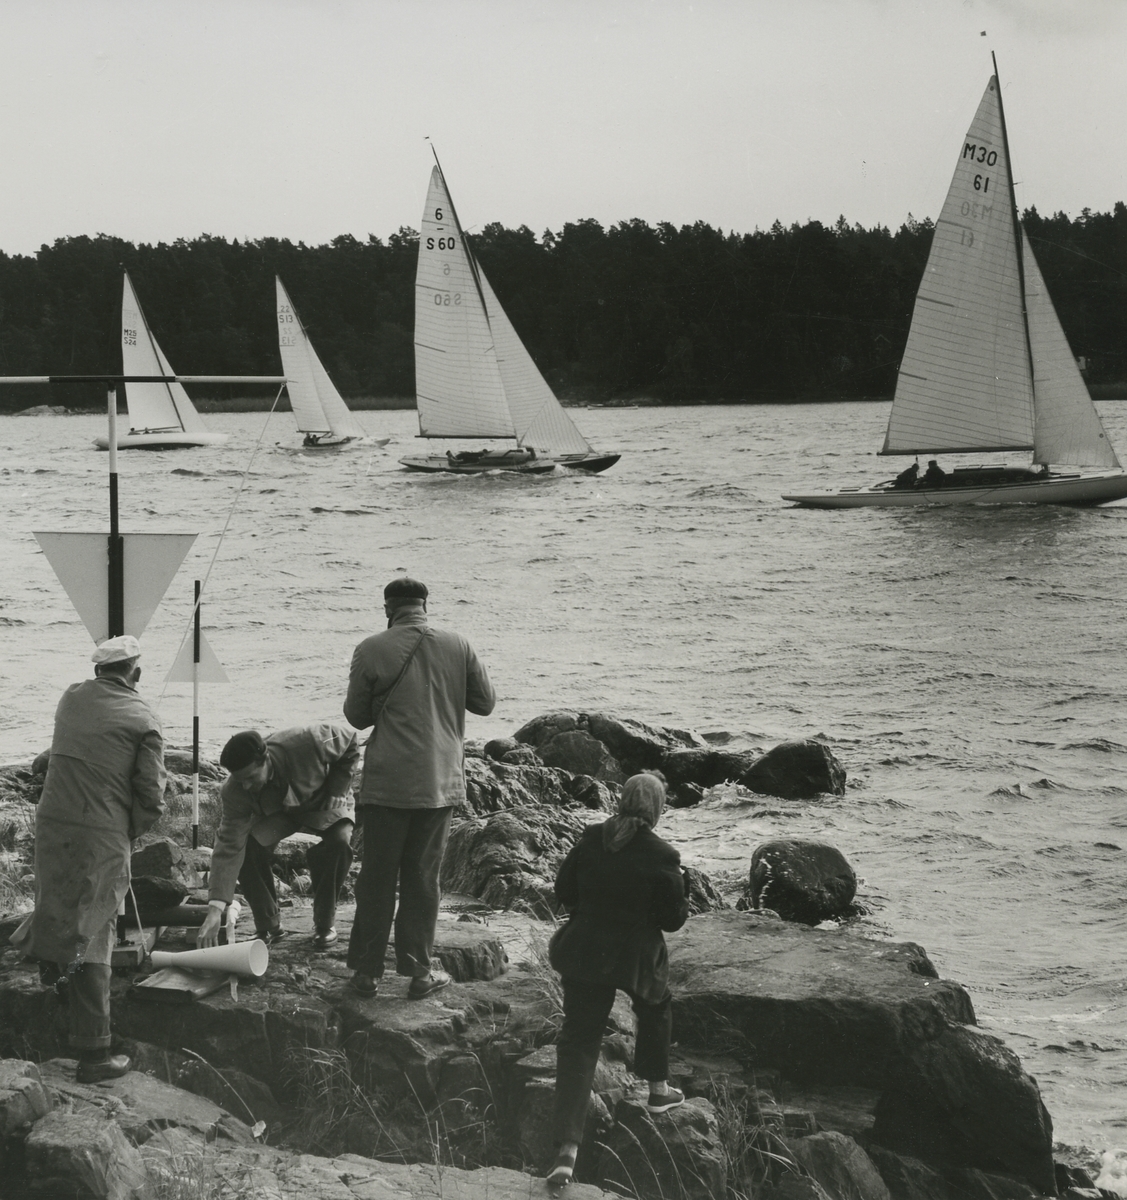 Segelbåtar på Baggensfjärden, Tjustviksholm.
Personer: Valdemar Ahlgren, Werner Rehn, Gunnar Lander